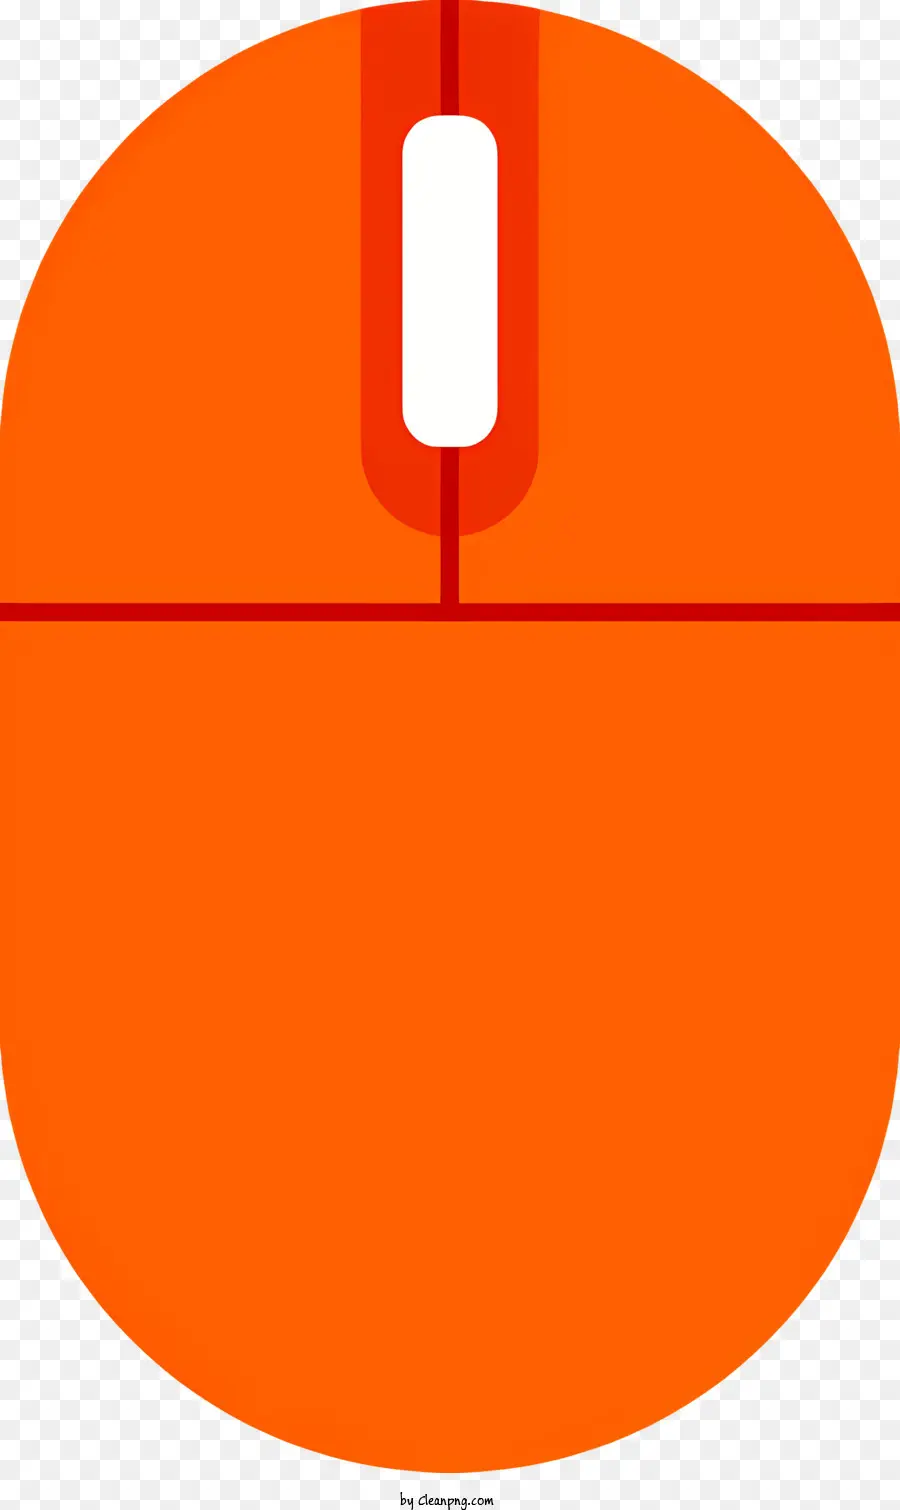 orange hintergrund - Computermaus mit weißem Pfeil auf orangefarbenem Hintergrund